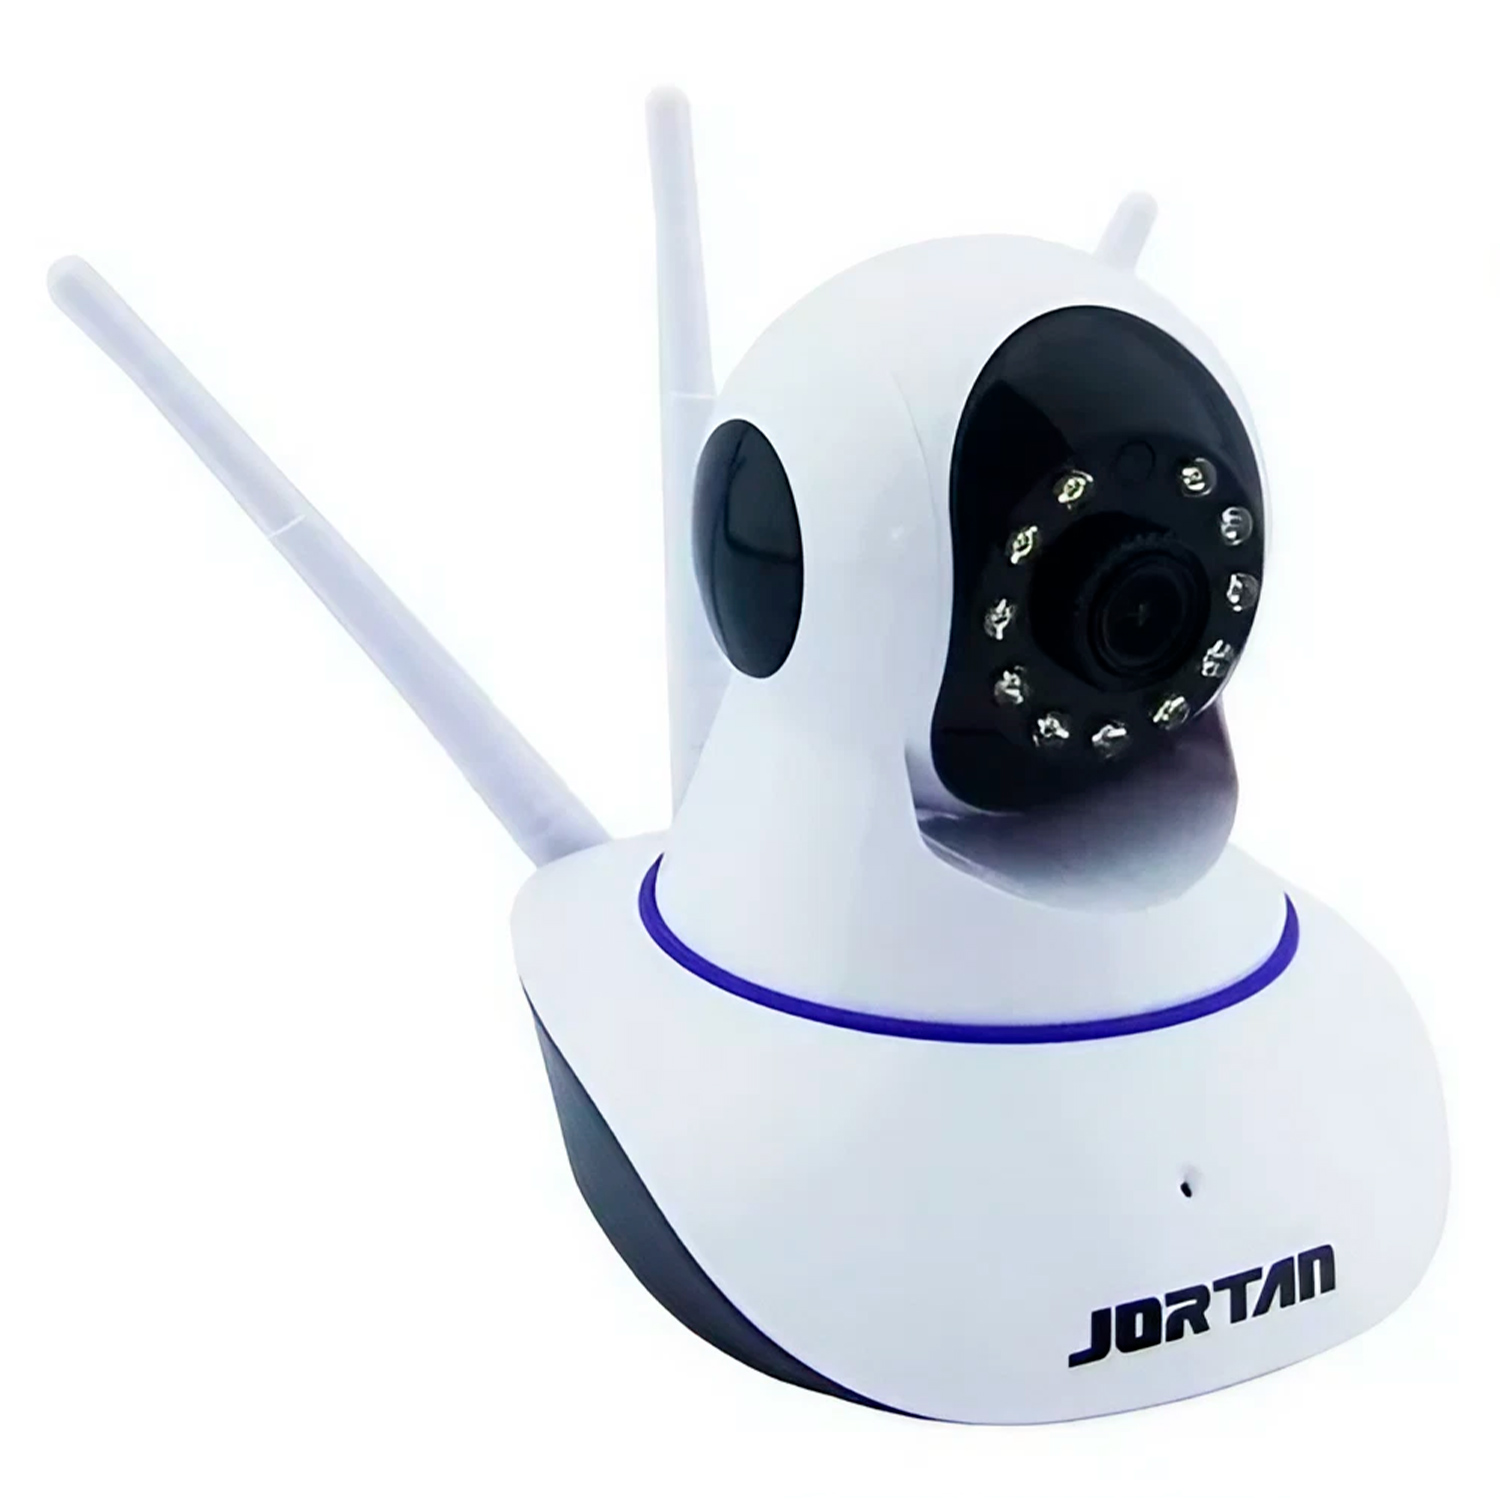 Câmera de Segurança Jortan JTZ-160BW-3B HD 1.3 MP WiFi - Branco